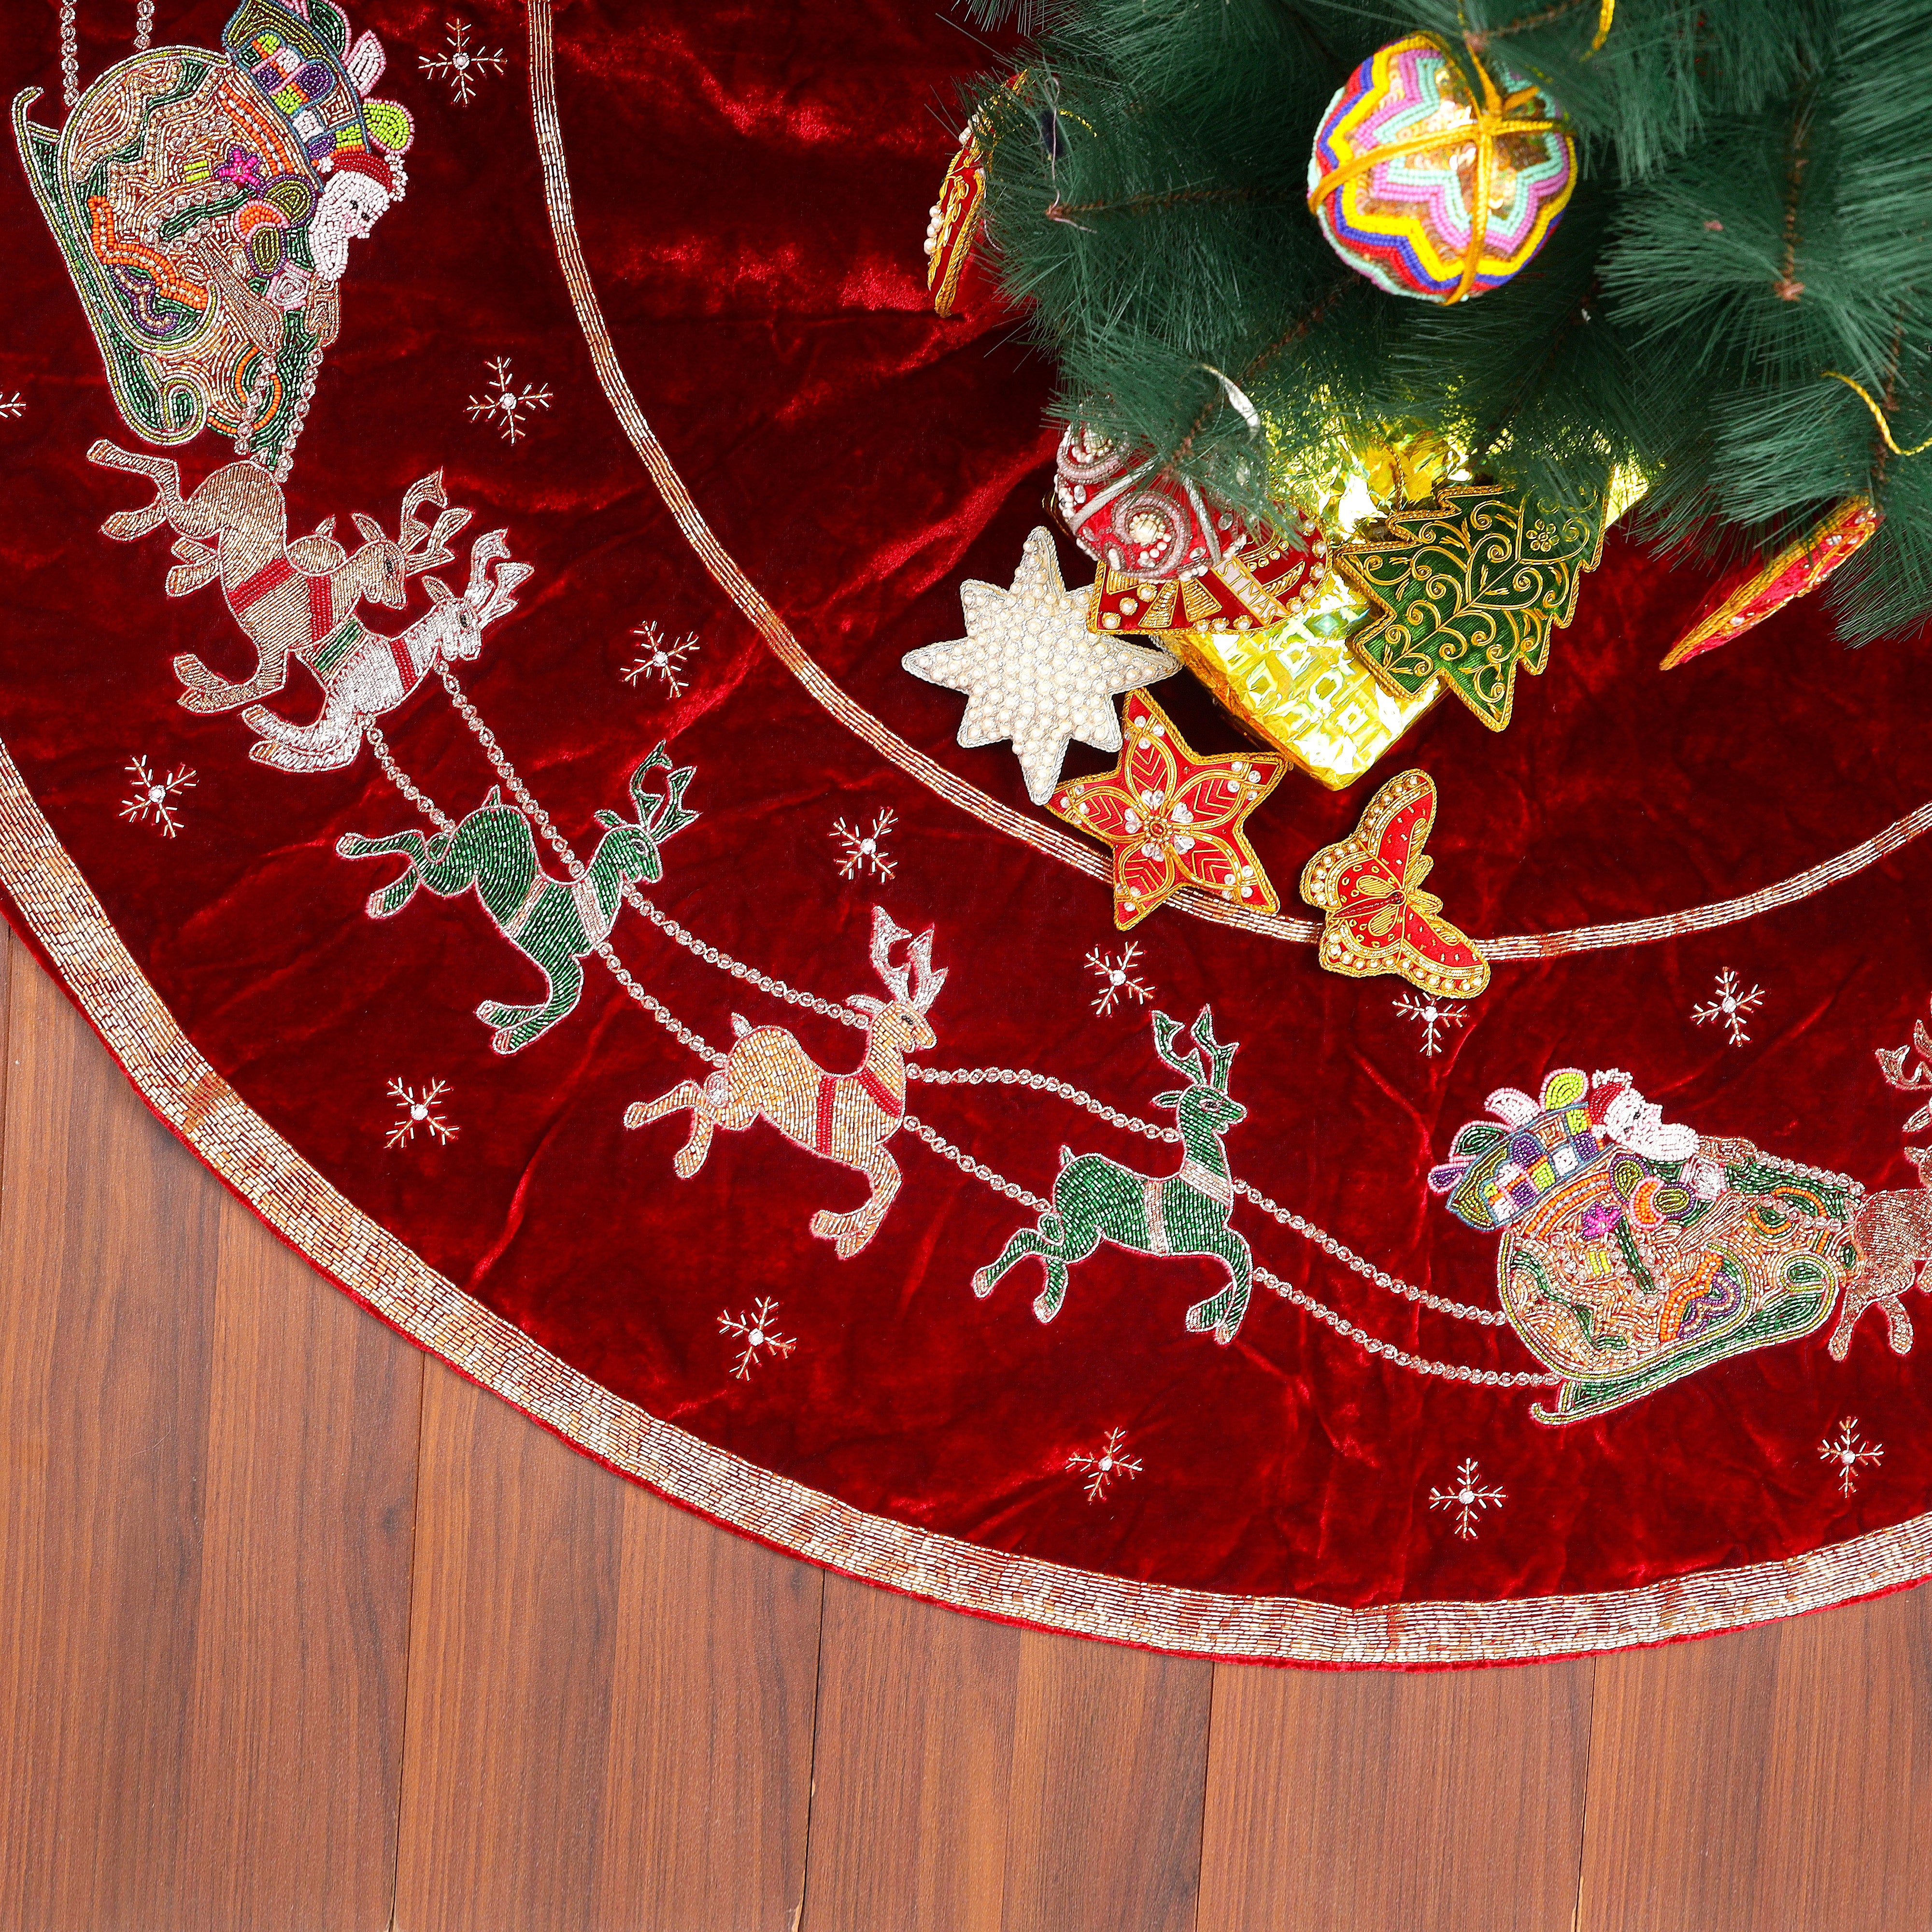 Santa Reindeer Carriage- Red Velvet Christmas Tree Skirt